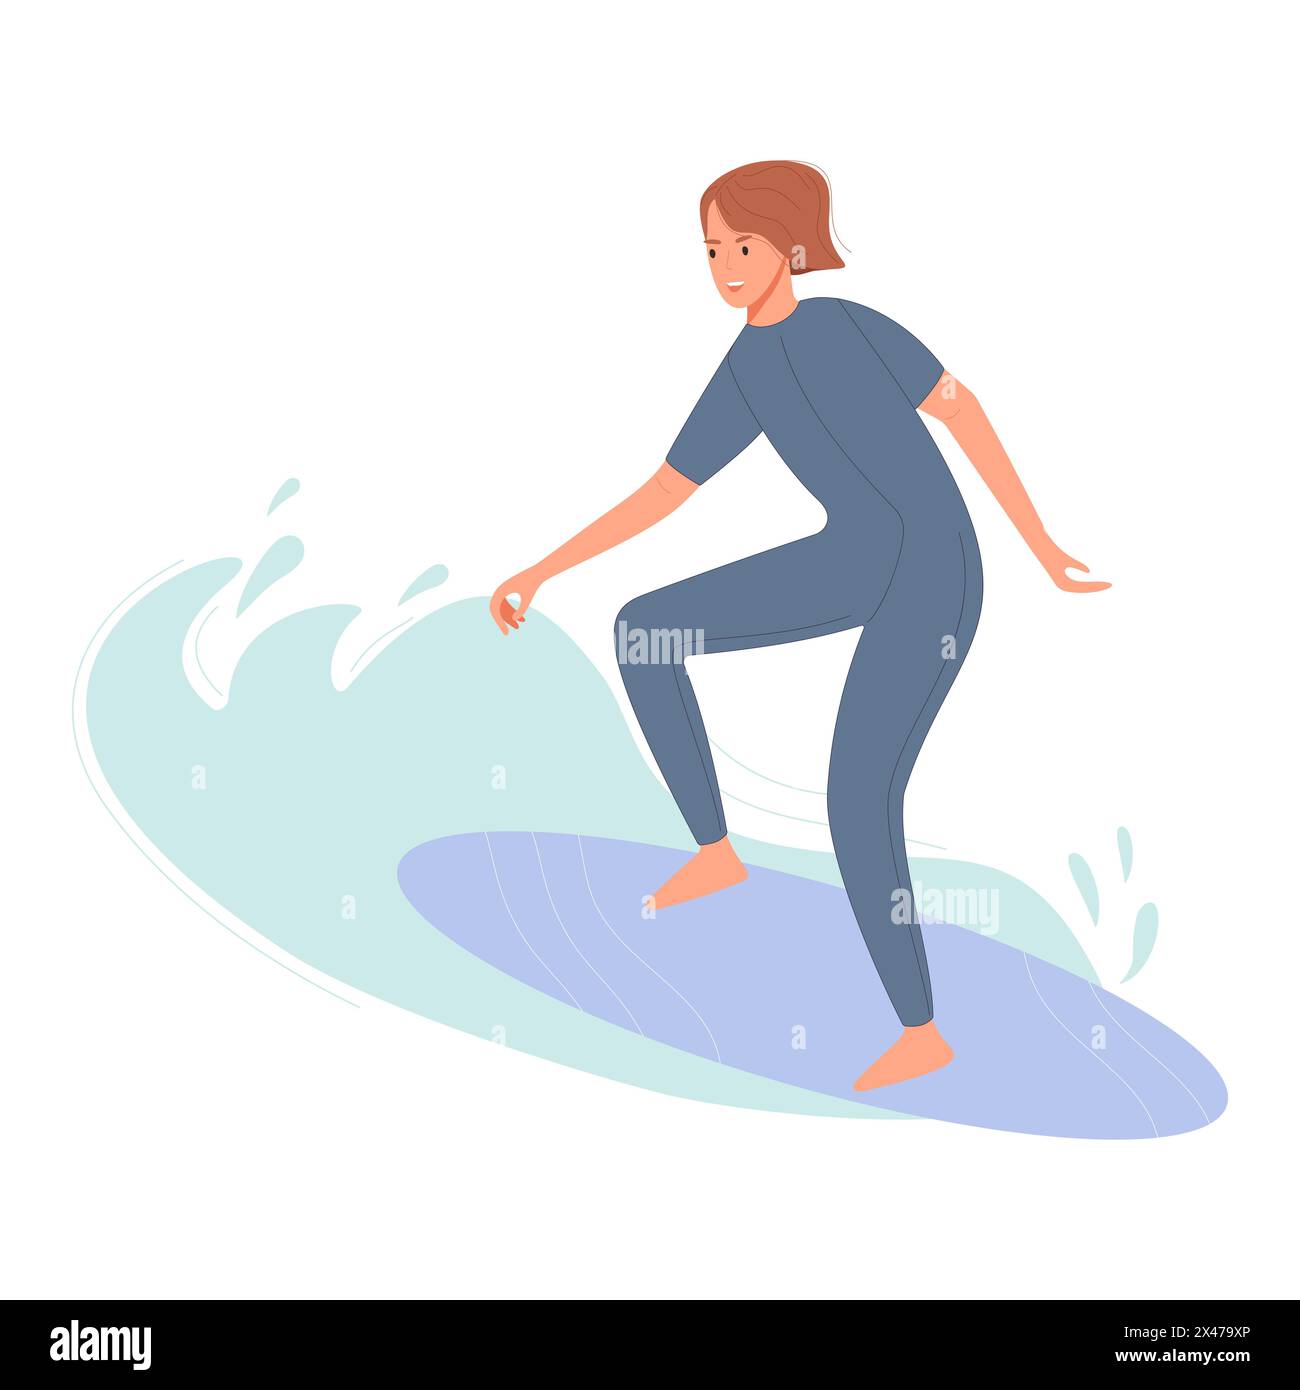 Frau, die auf einer großen Welle in einem grauen Neoprenanzug surft Stock Vektor